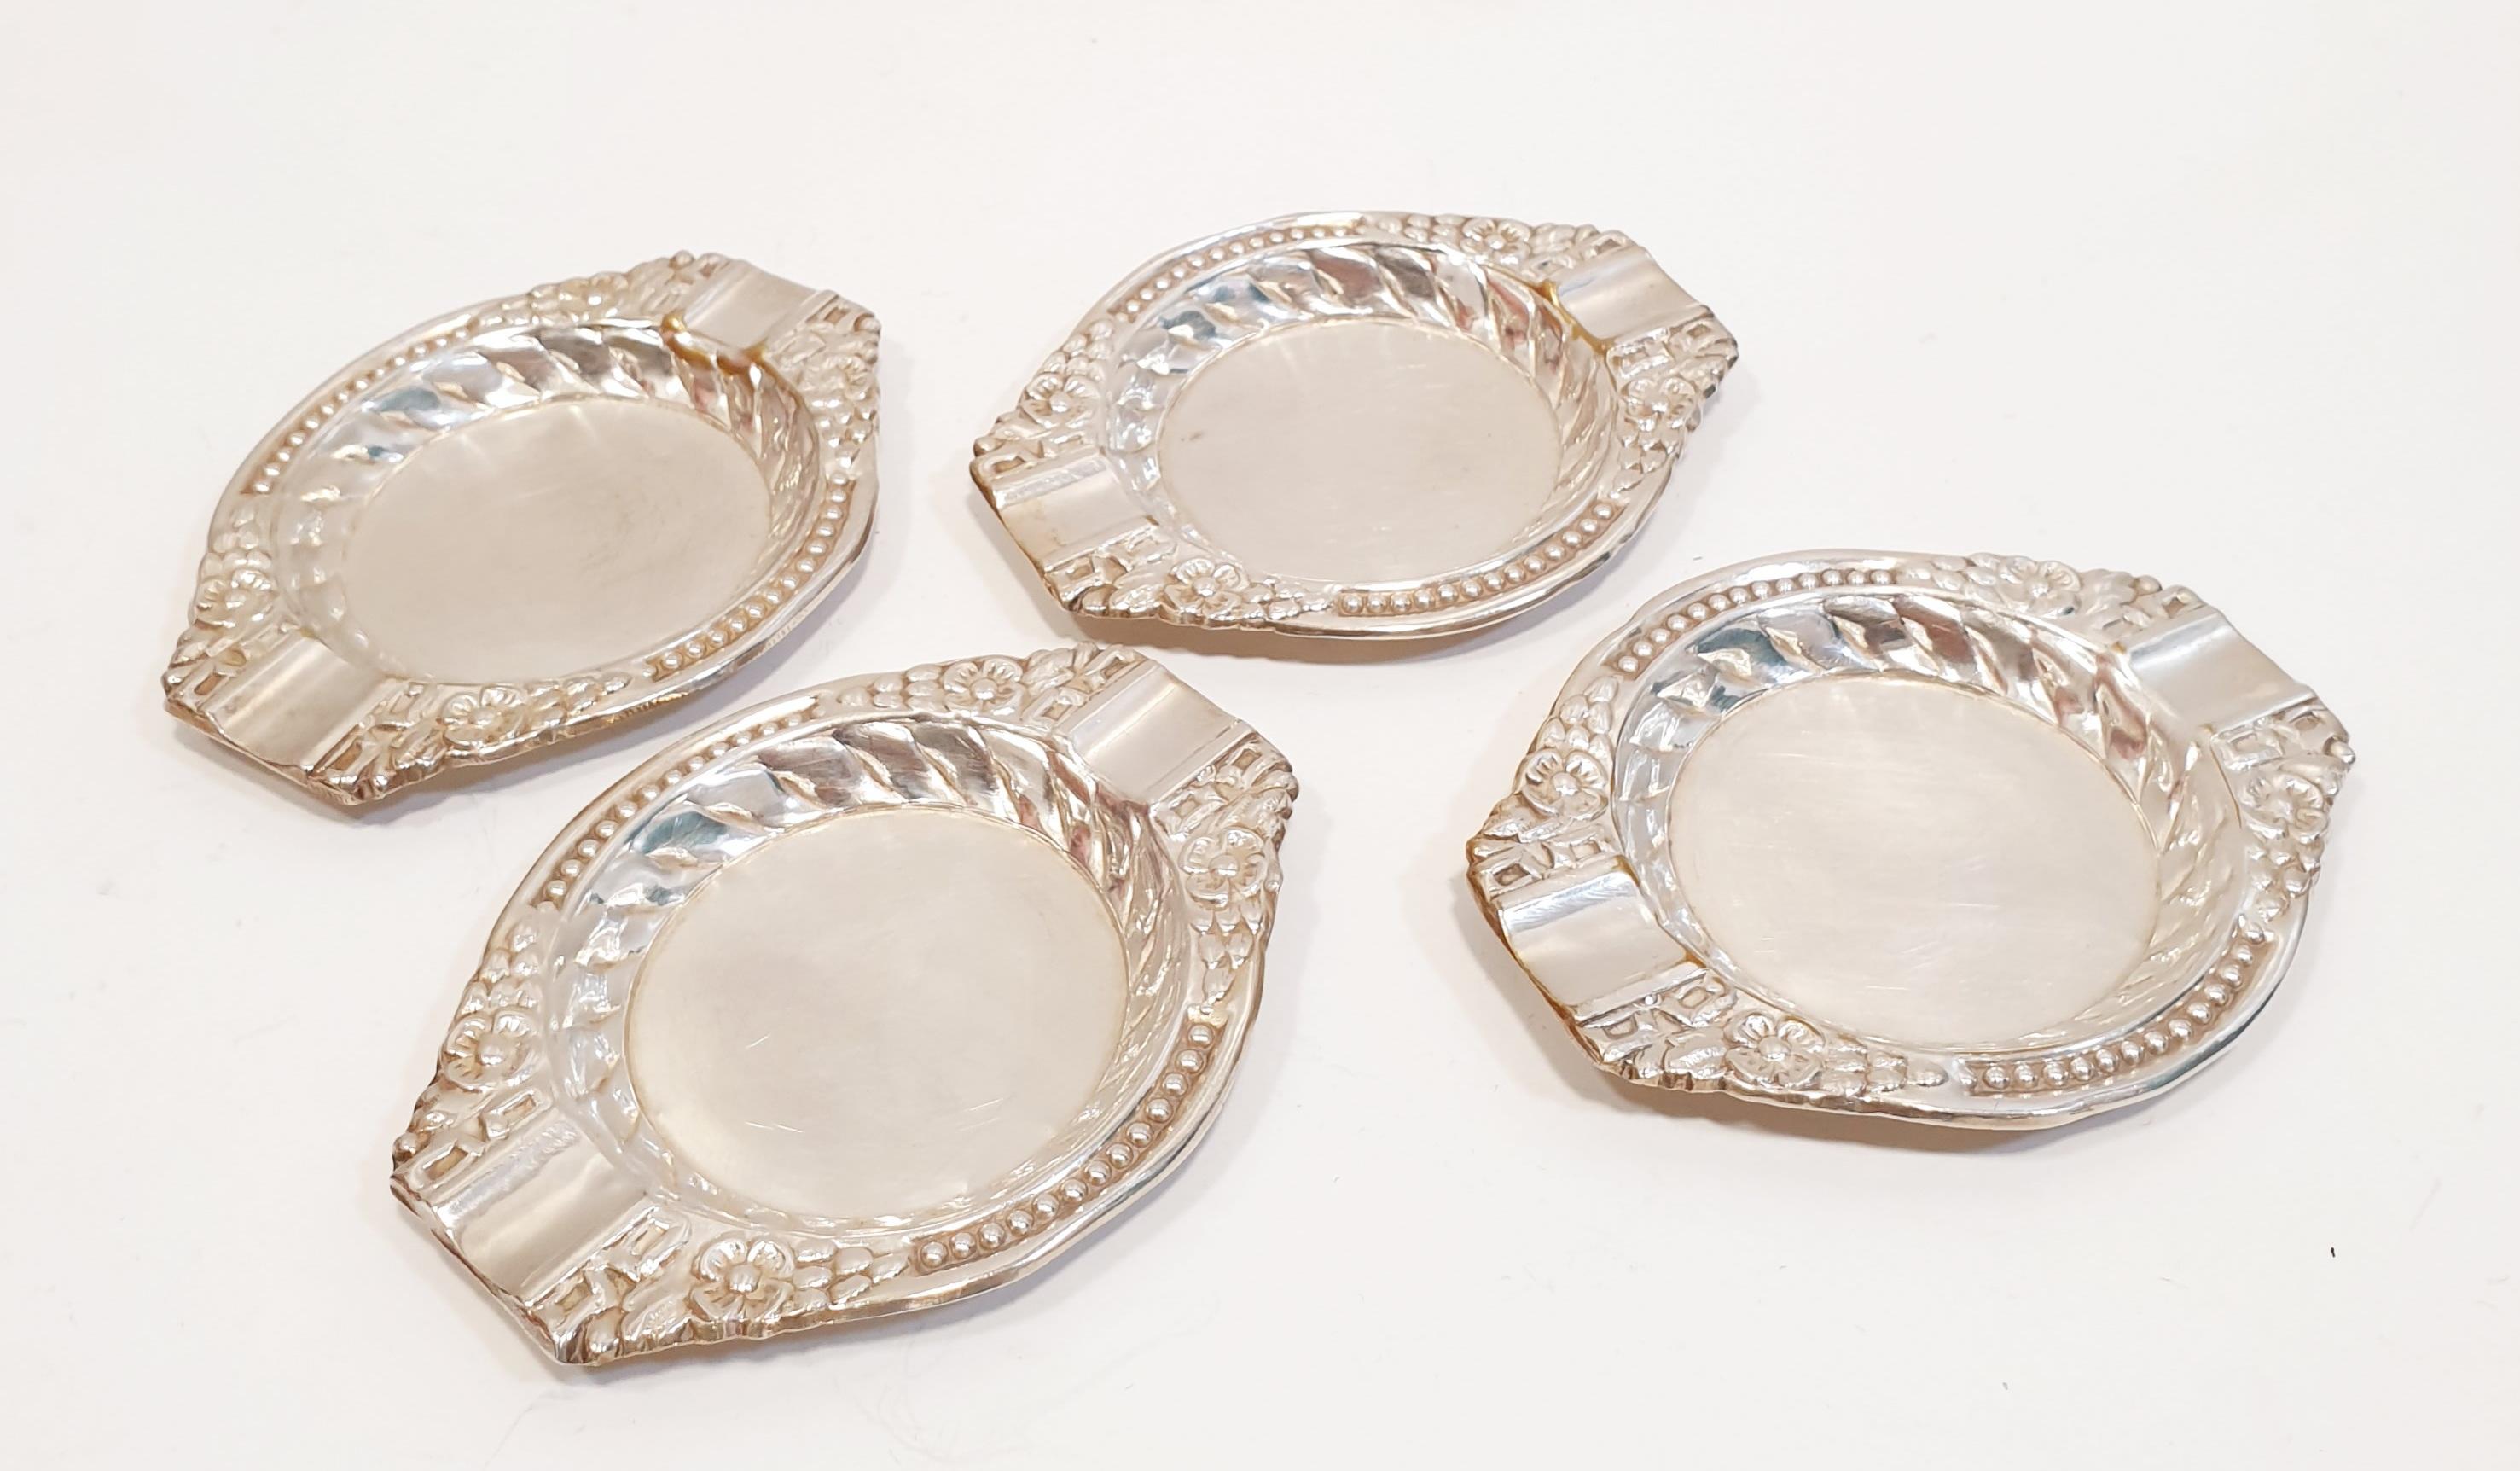 19. Jahrhundert Silber Aschenbecher Satz von 4

PRADERA ist ein in zweiter Generation familiengeführtes Juwelierunternehmen in Spanien, mit einer reichen Erfolgsbilanz als offizieller Vertreiber von erstklassigen europäischen Schmuckmarken wie